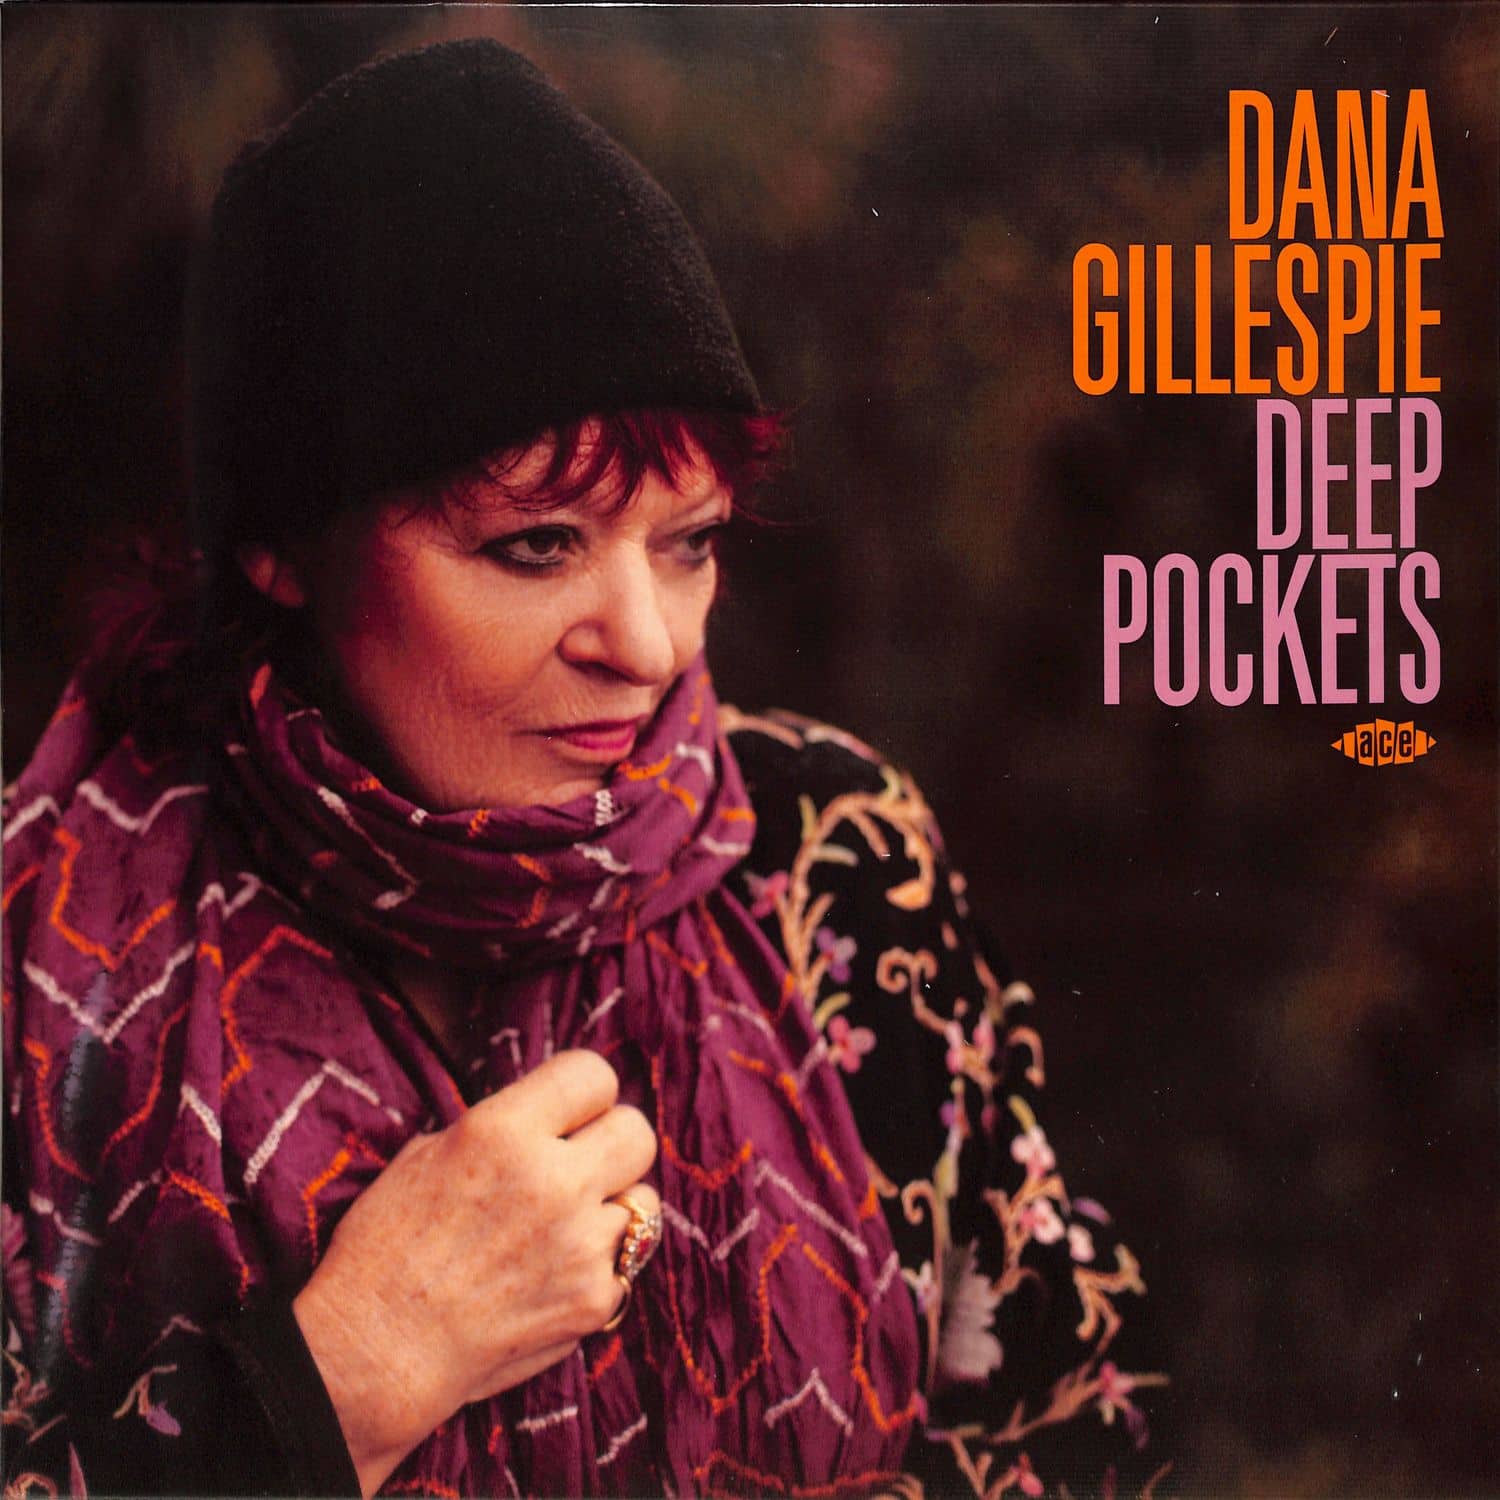 Dana Gillespie - DEEP POCKETS 